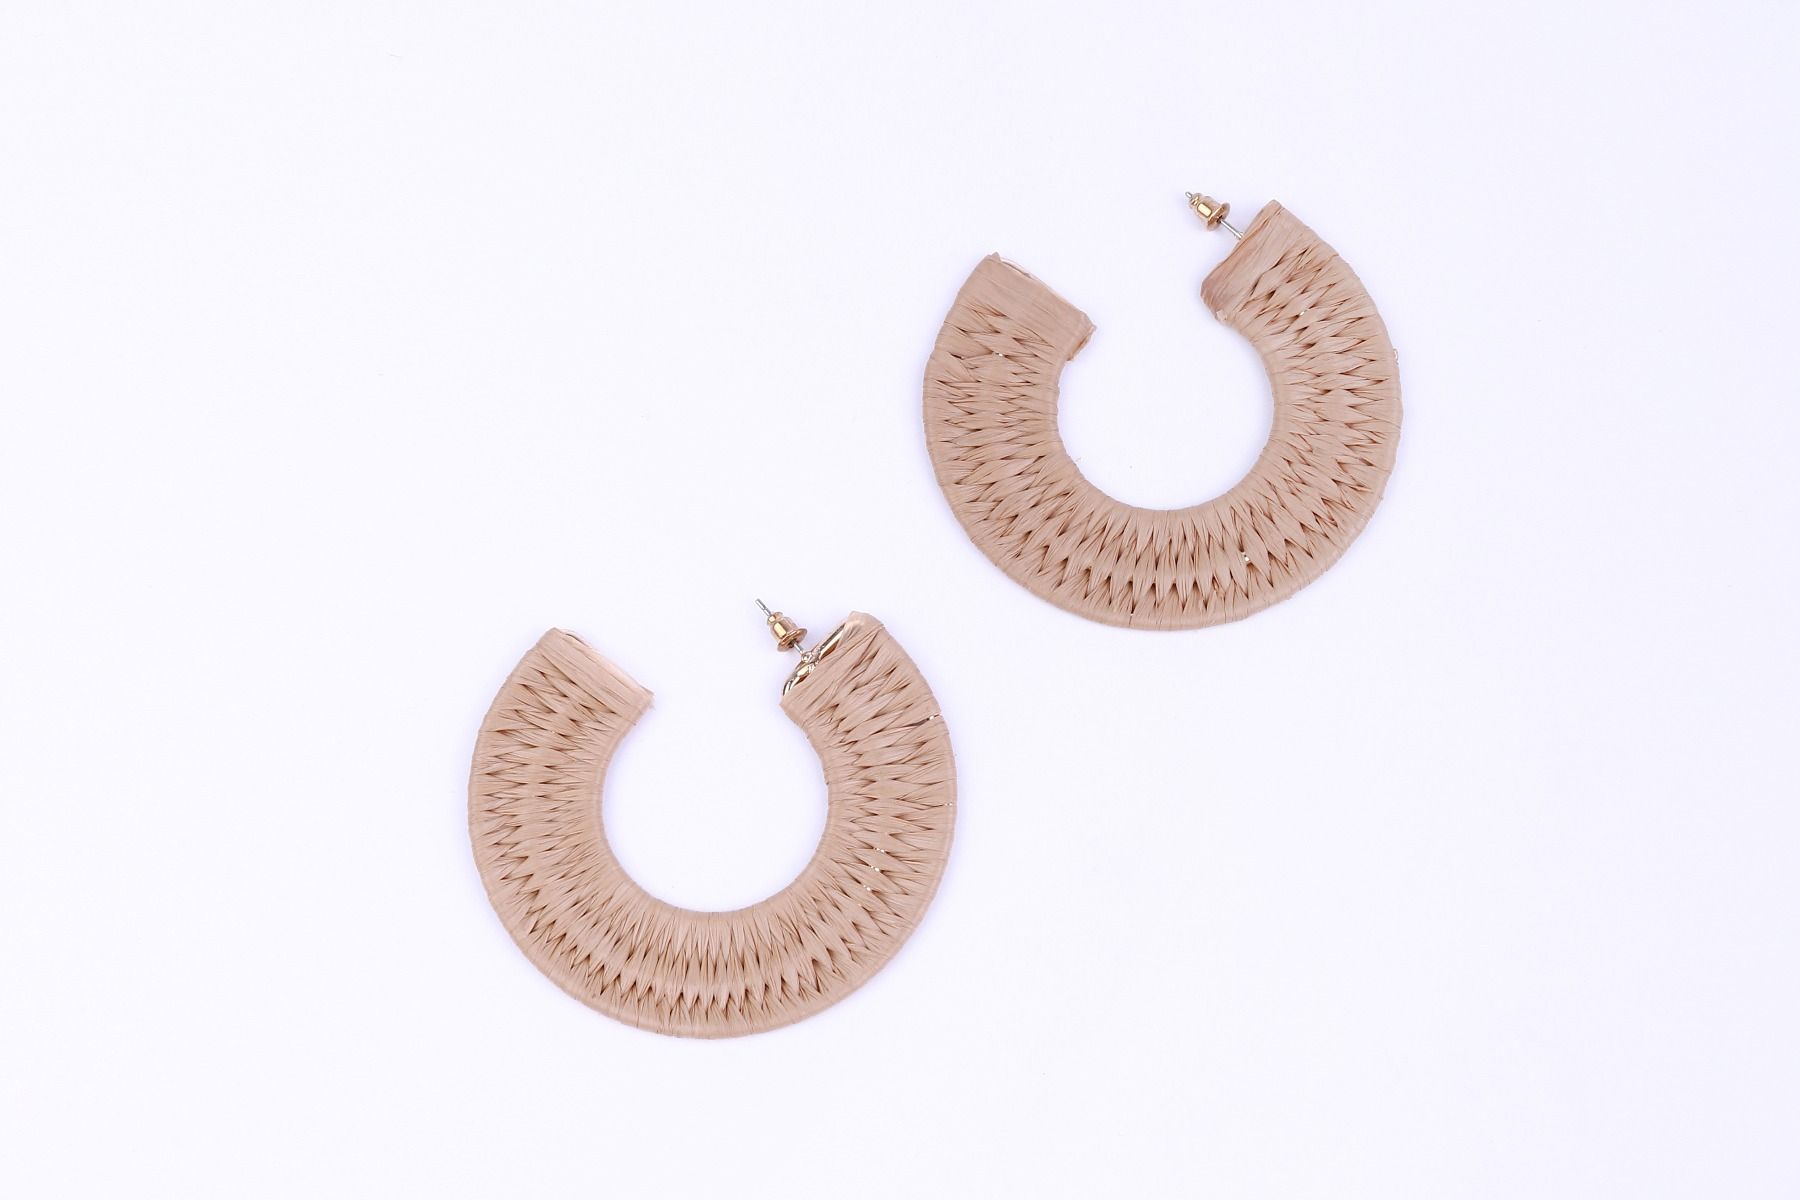 Woven straw earrings